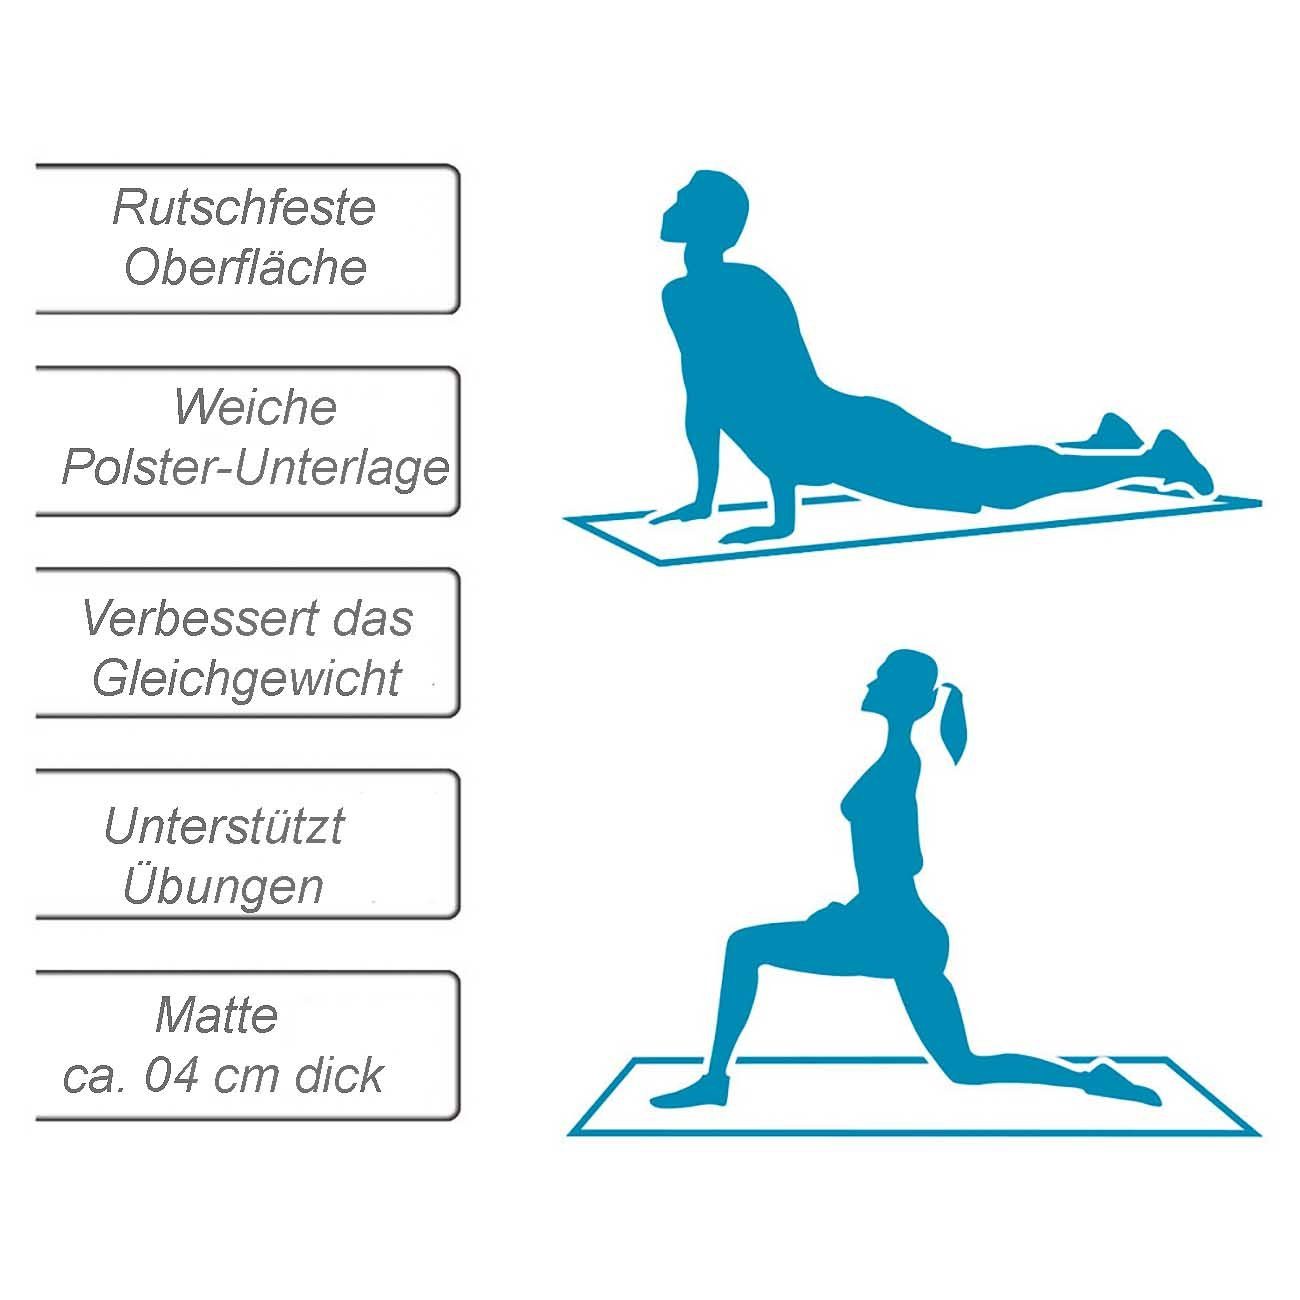 Umbro gelb Tragegurt), (Sportmatte mit abnehmbarem aufrollbar Fitnessmatte Yogamatte Yogamatte